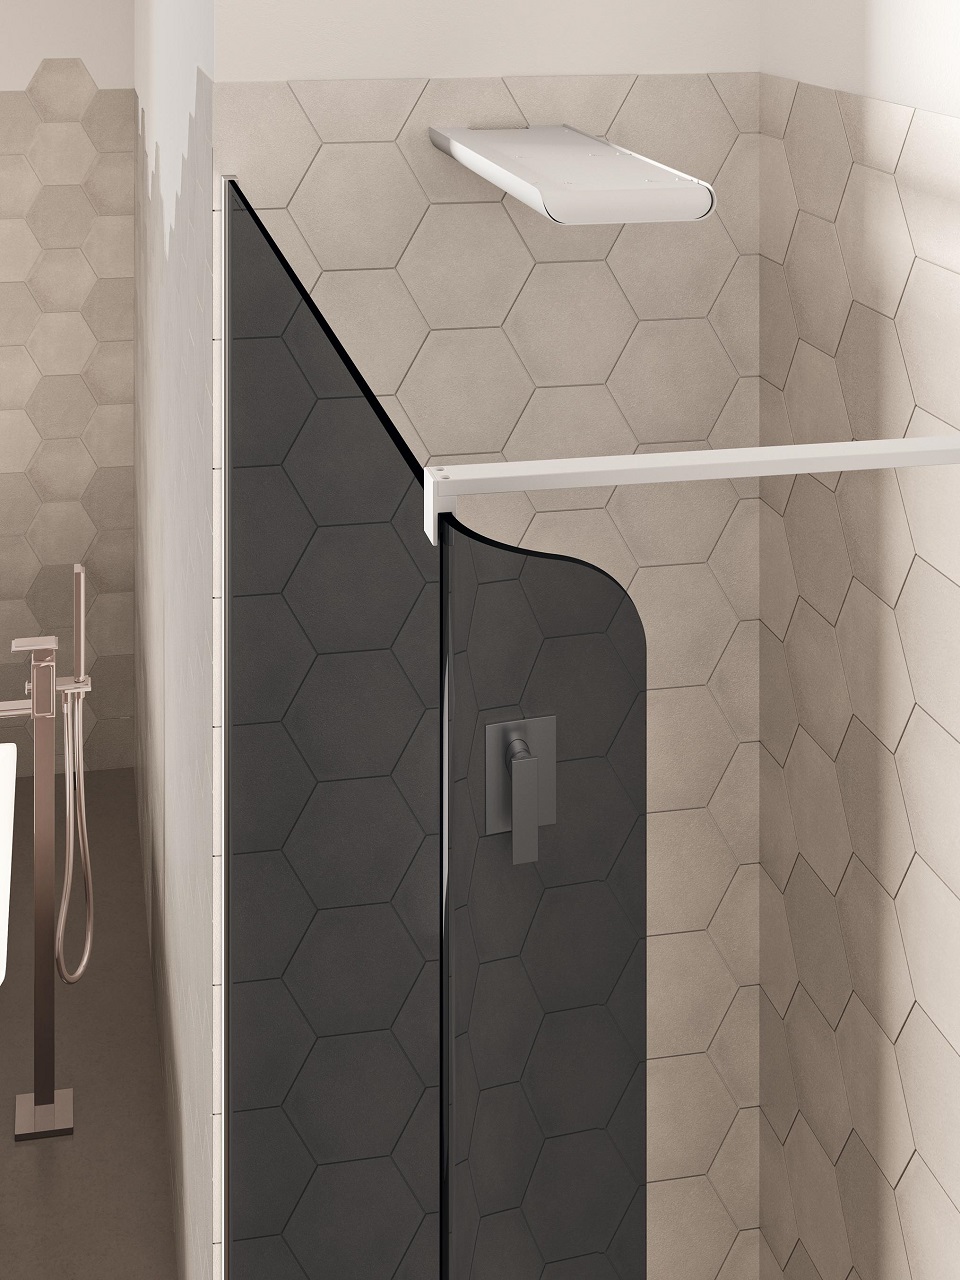 Bobox, l'innovativa cabina doccia componibile che rivoluziona il benessere in bagno B 2 red